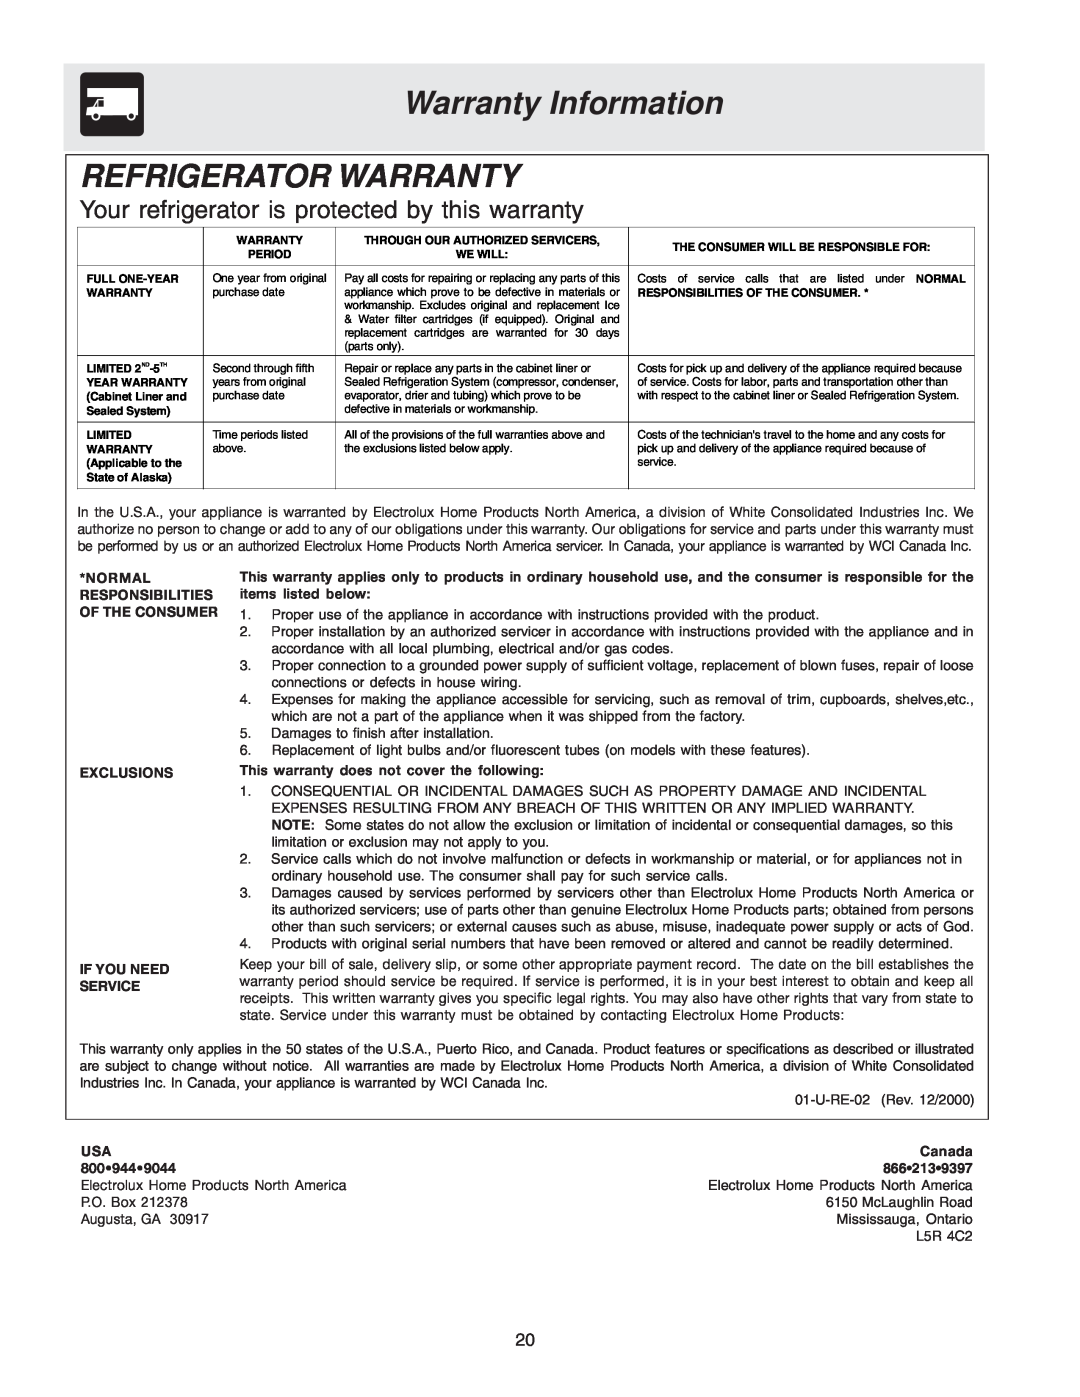 Frigidaire FRS26KF7AW1 Warranty Information REFRIGERATOR WARRANTY, Your refrigerator is protected by this warranty, Canada 